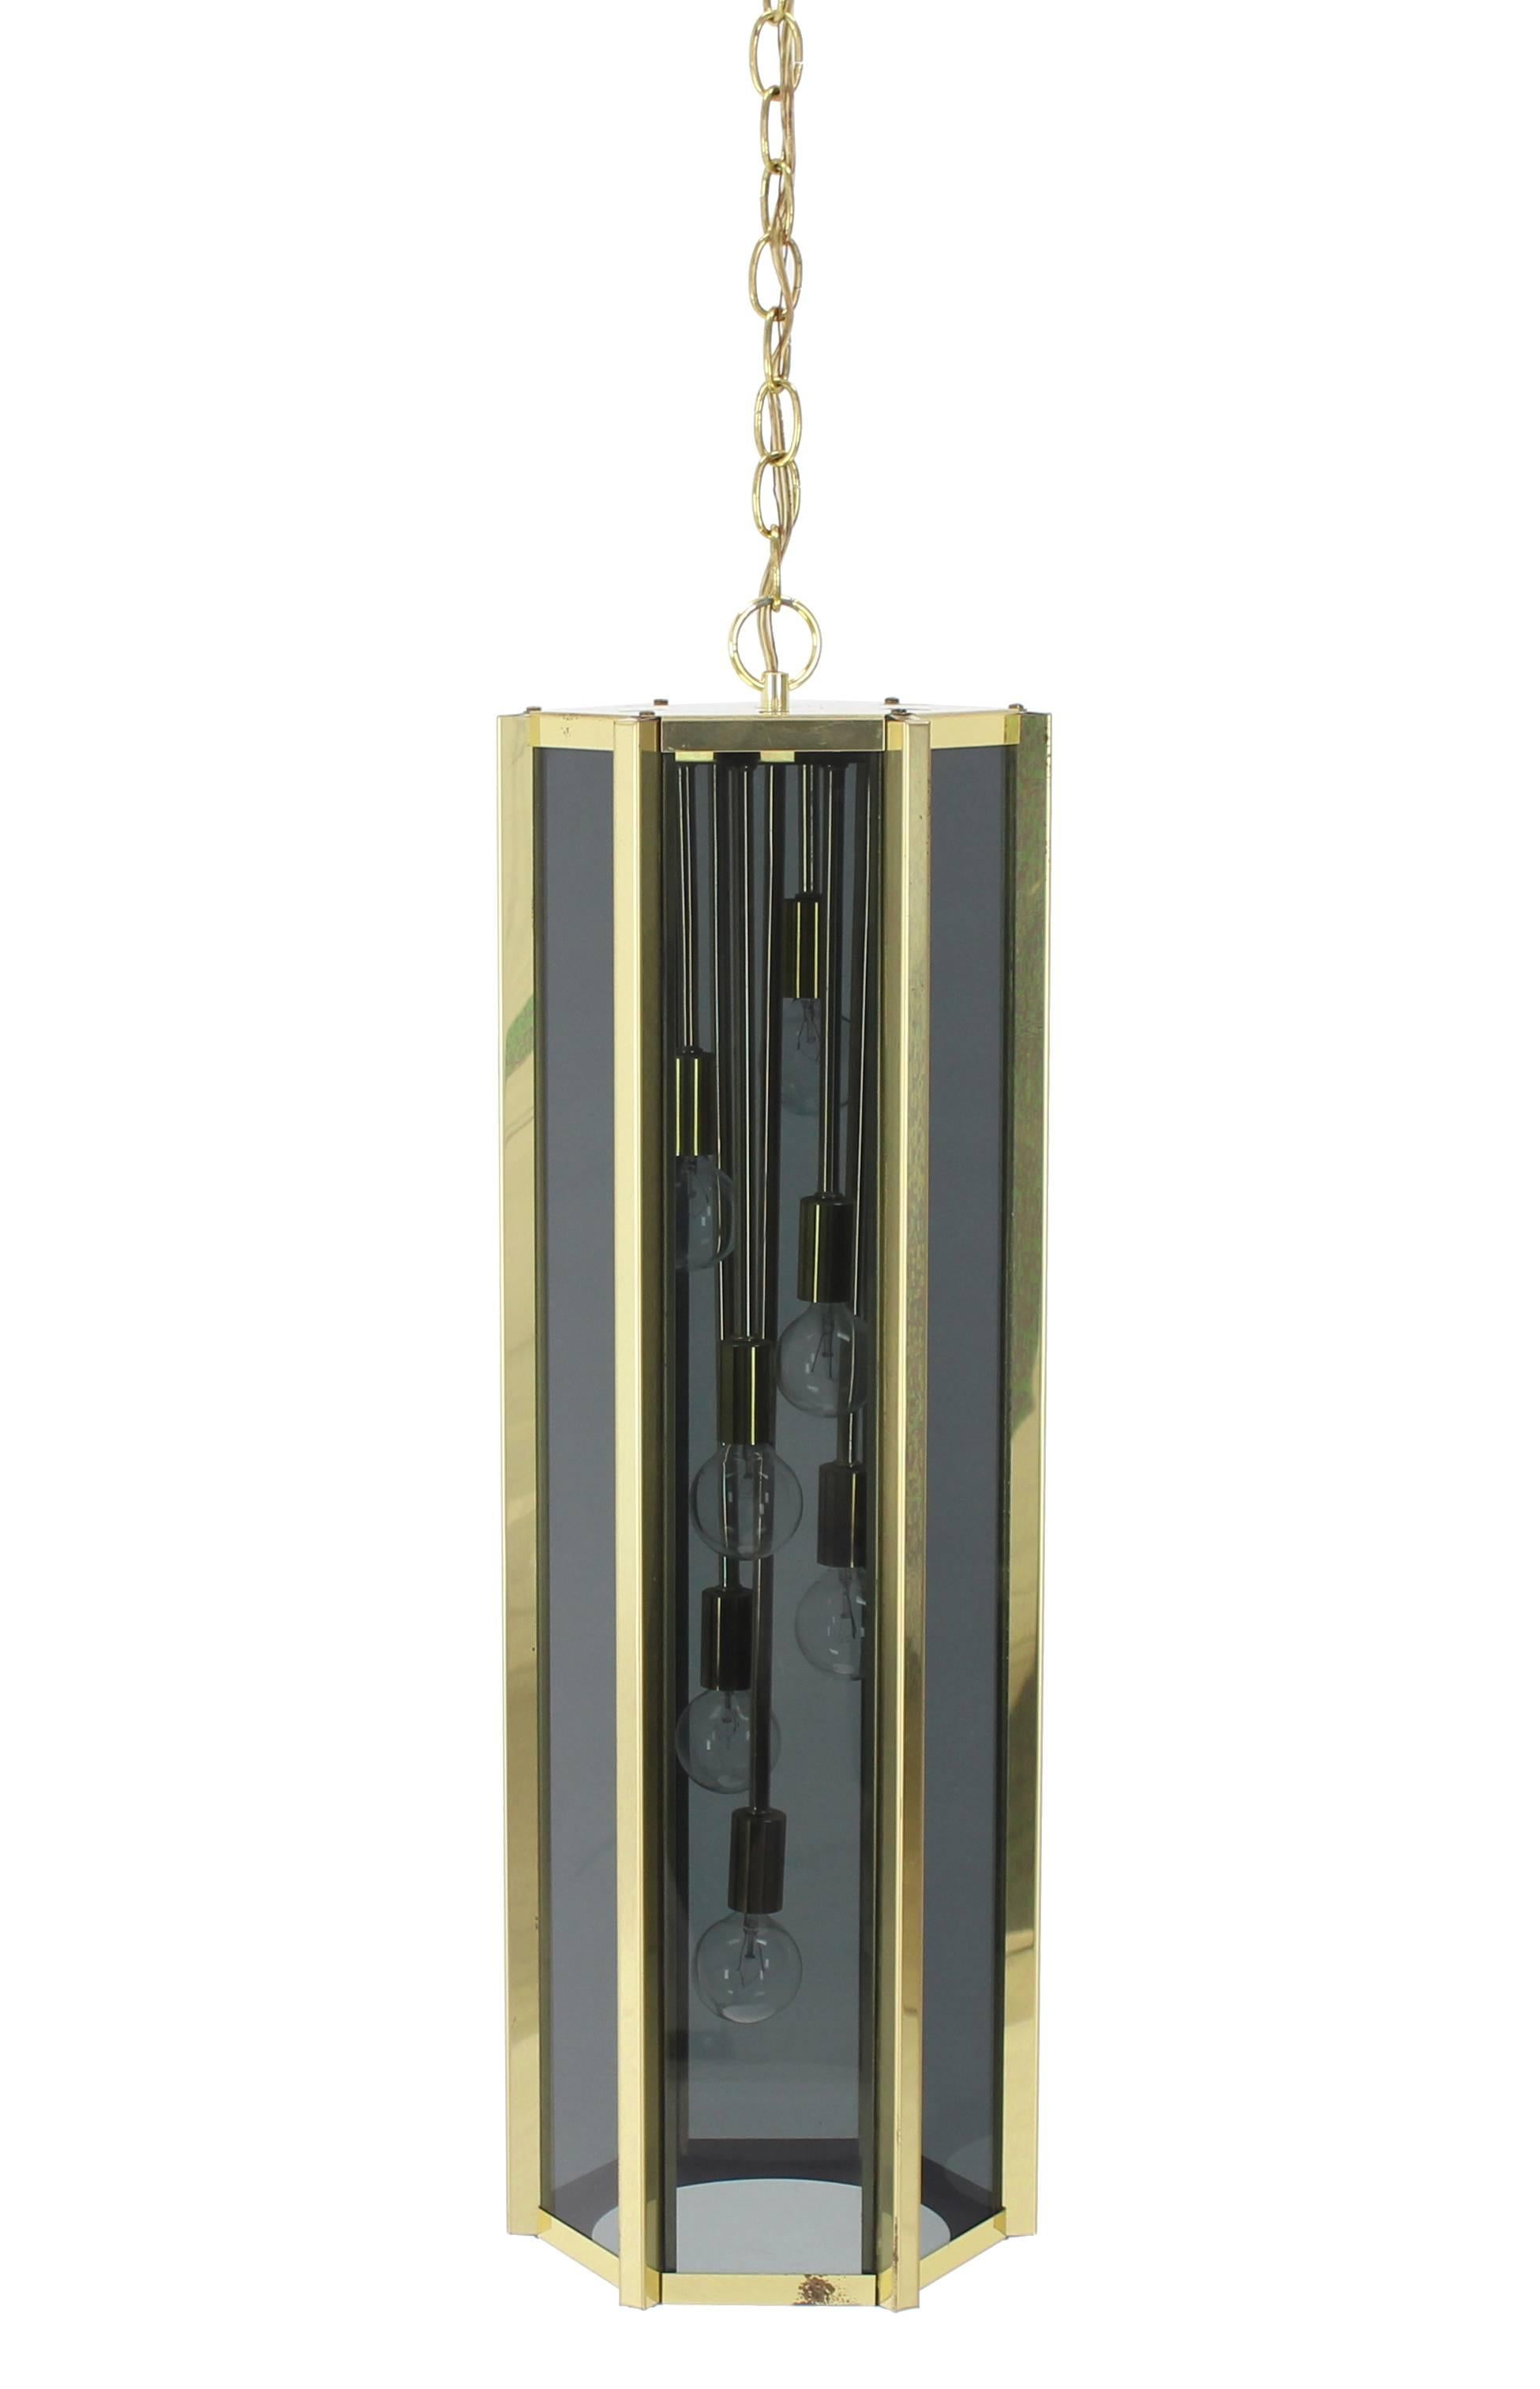 Very nice Mid-Century Modern unusual shape pendant light fixture.